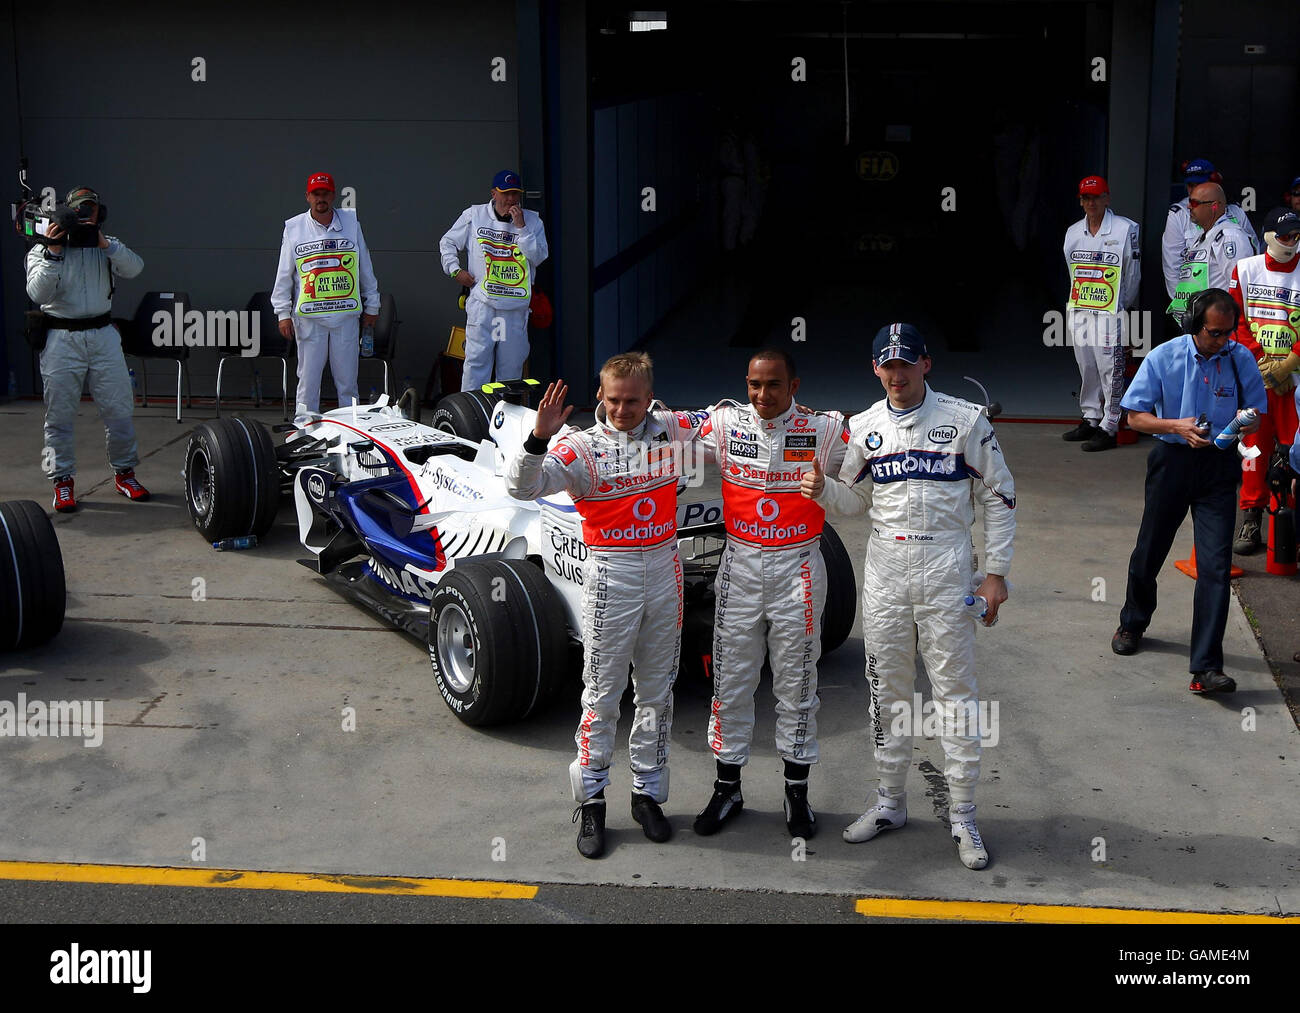 Der Großbritanniens Lewis Hamilton feiert seine Pole-Position mit dem zweitplatzierten Robert Kubica (rechts) und dem drittplatzierten Heikki Kovalainen (links) im Qualifying im Albert Park, Melbourne, Australien. Stockfoto